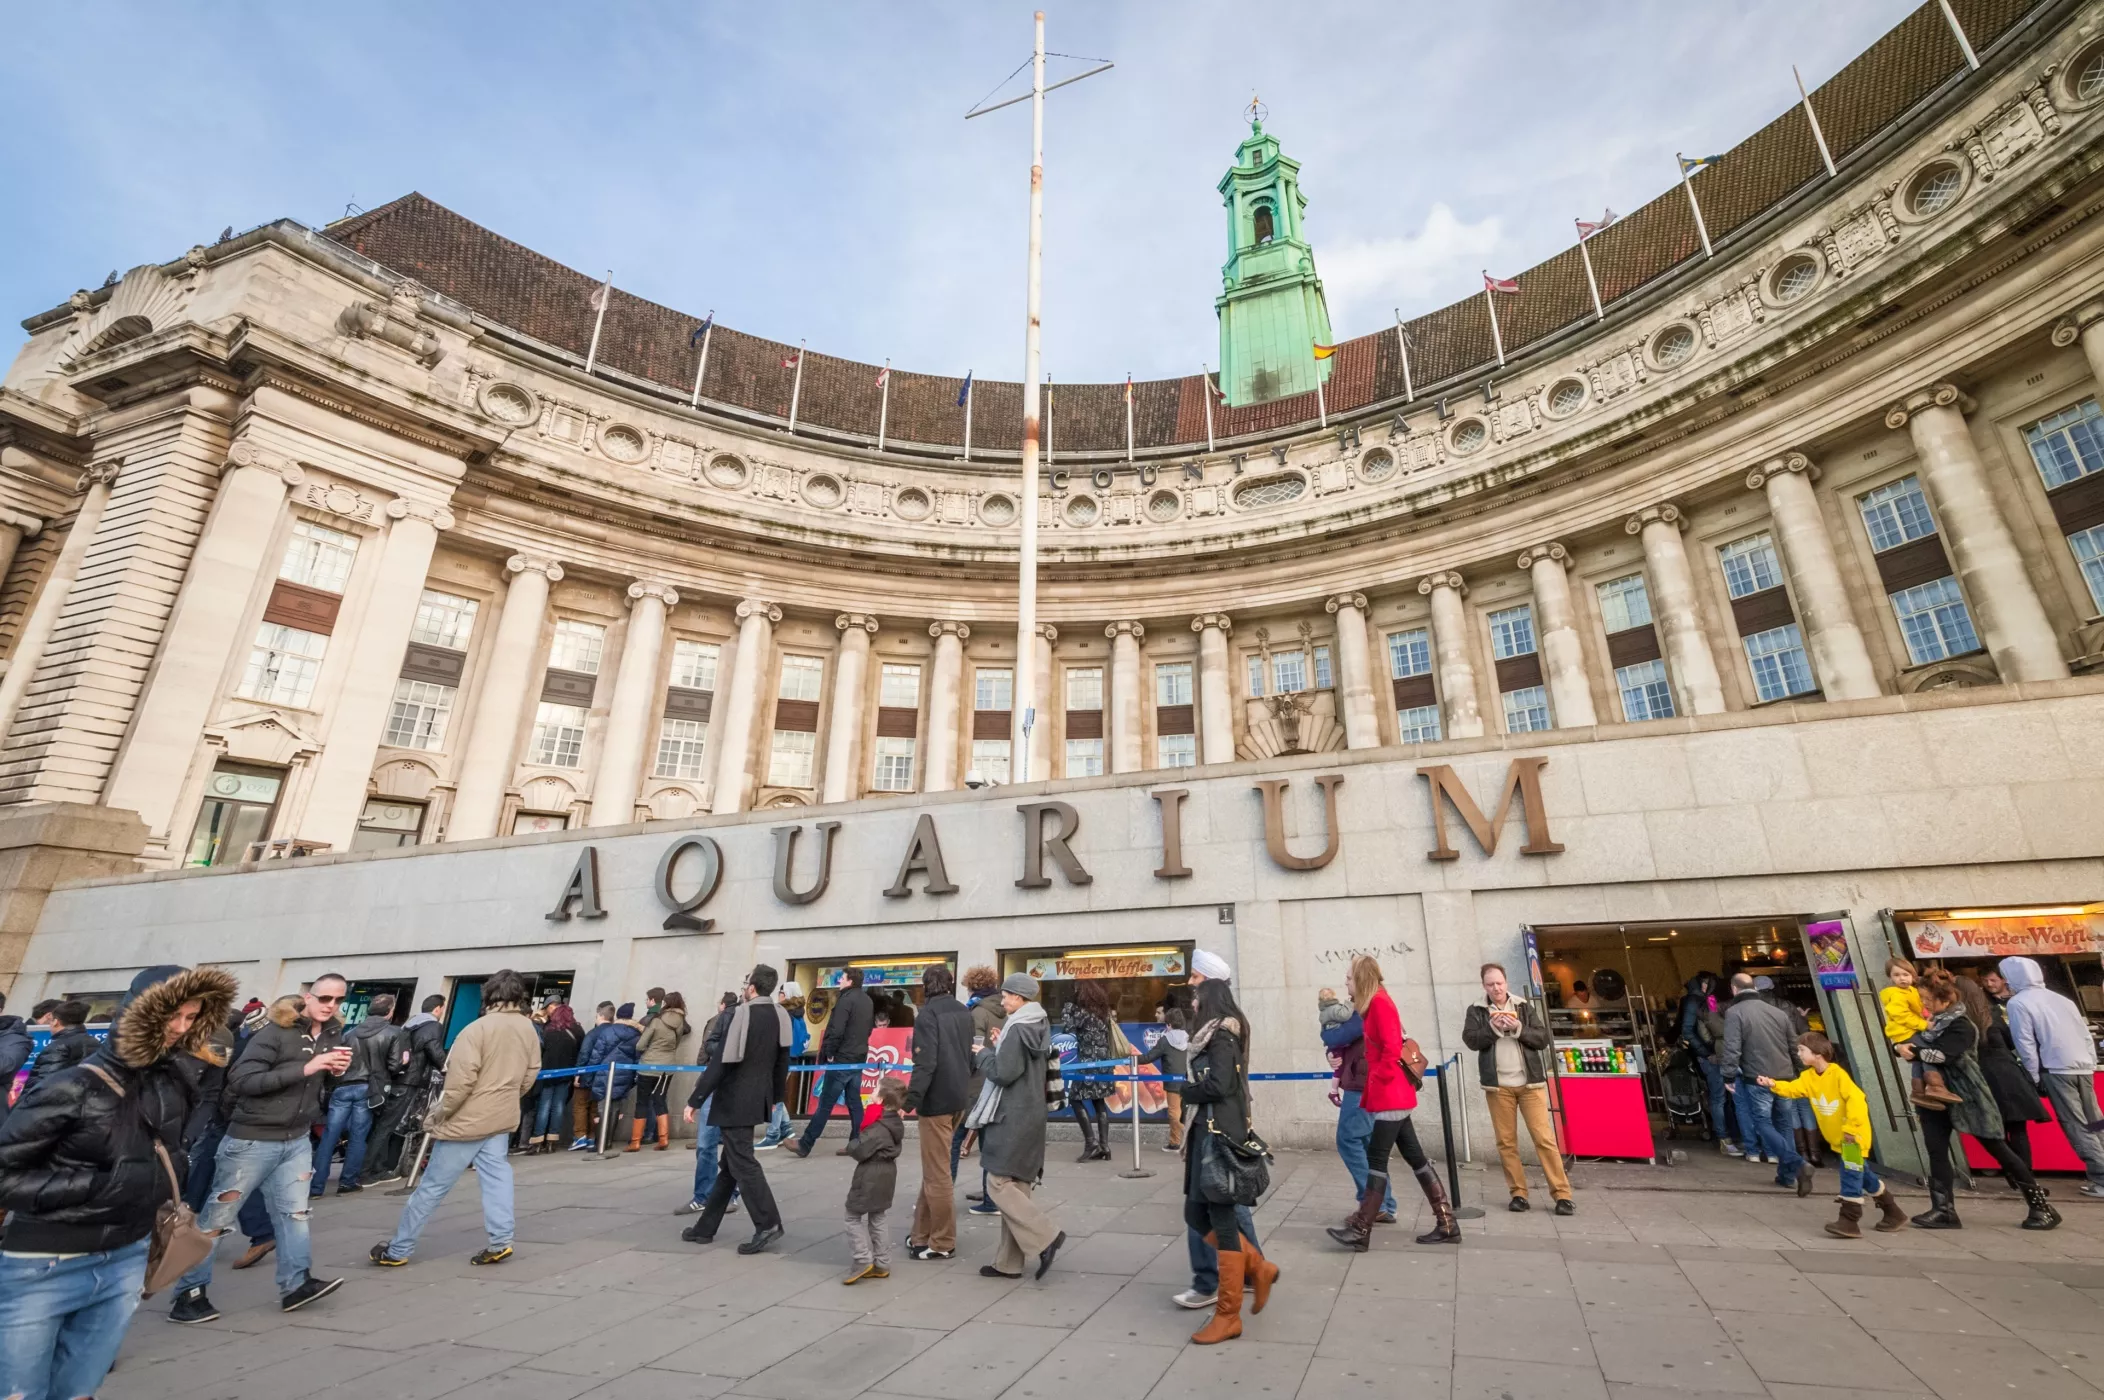 London Aquarium in United Kingdom, Europe | Aquariums & Oceanariums - Rated 5.6